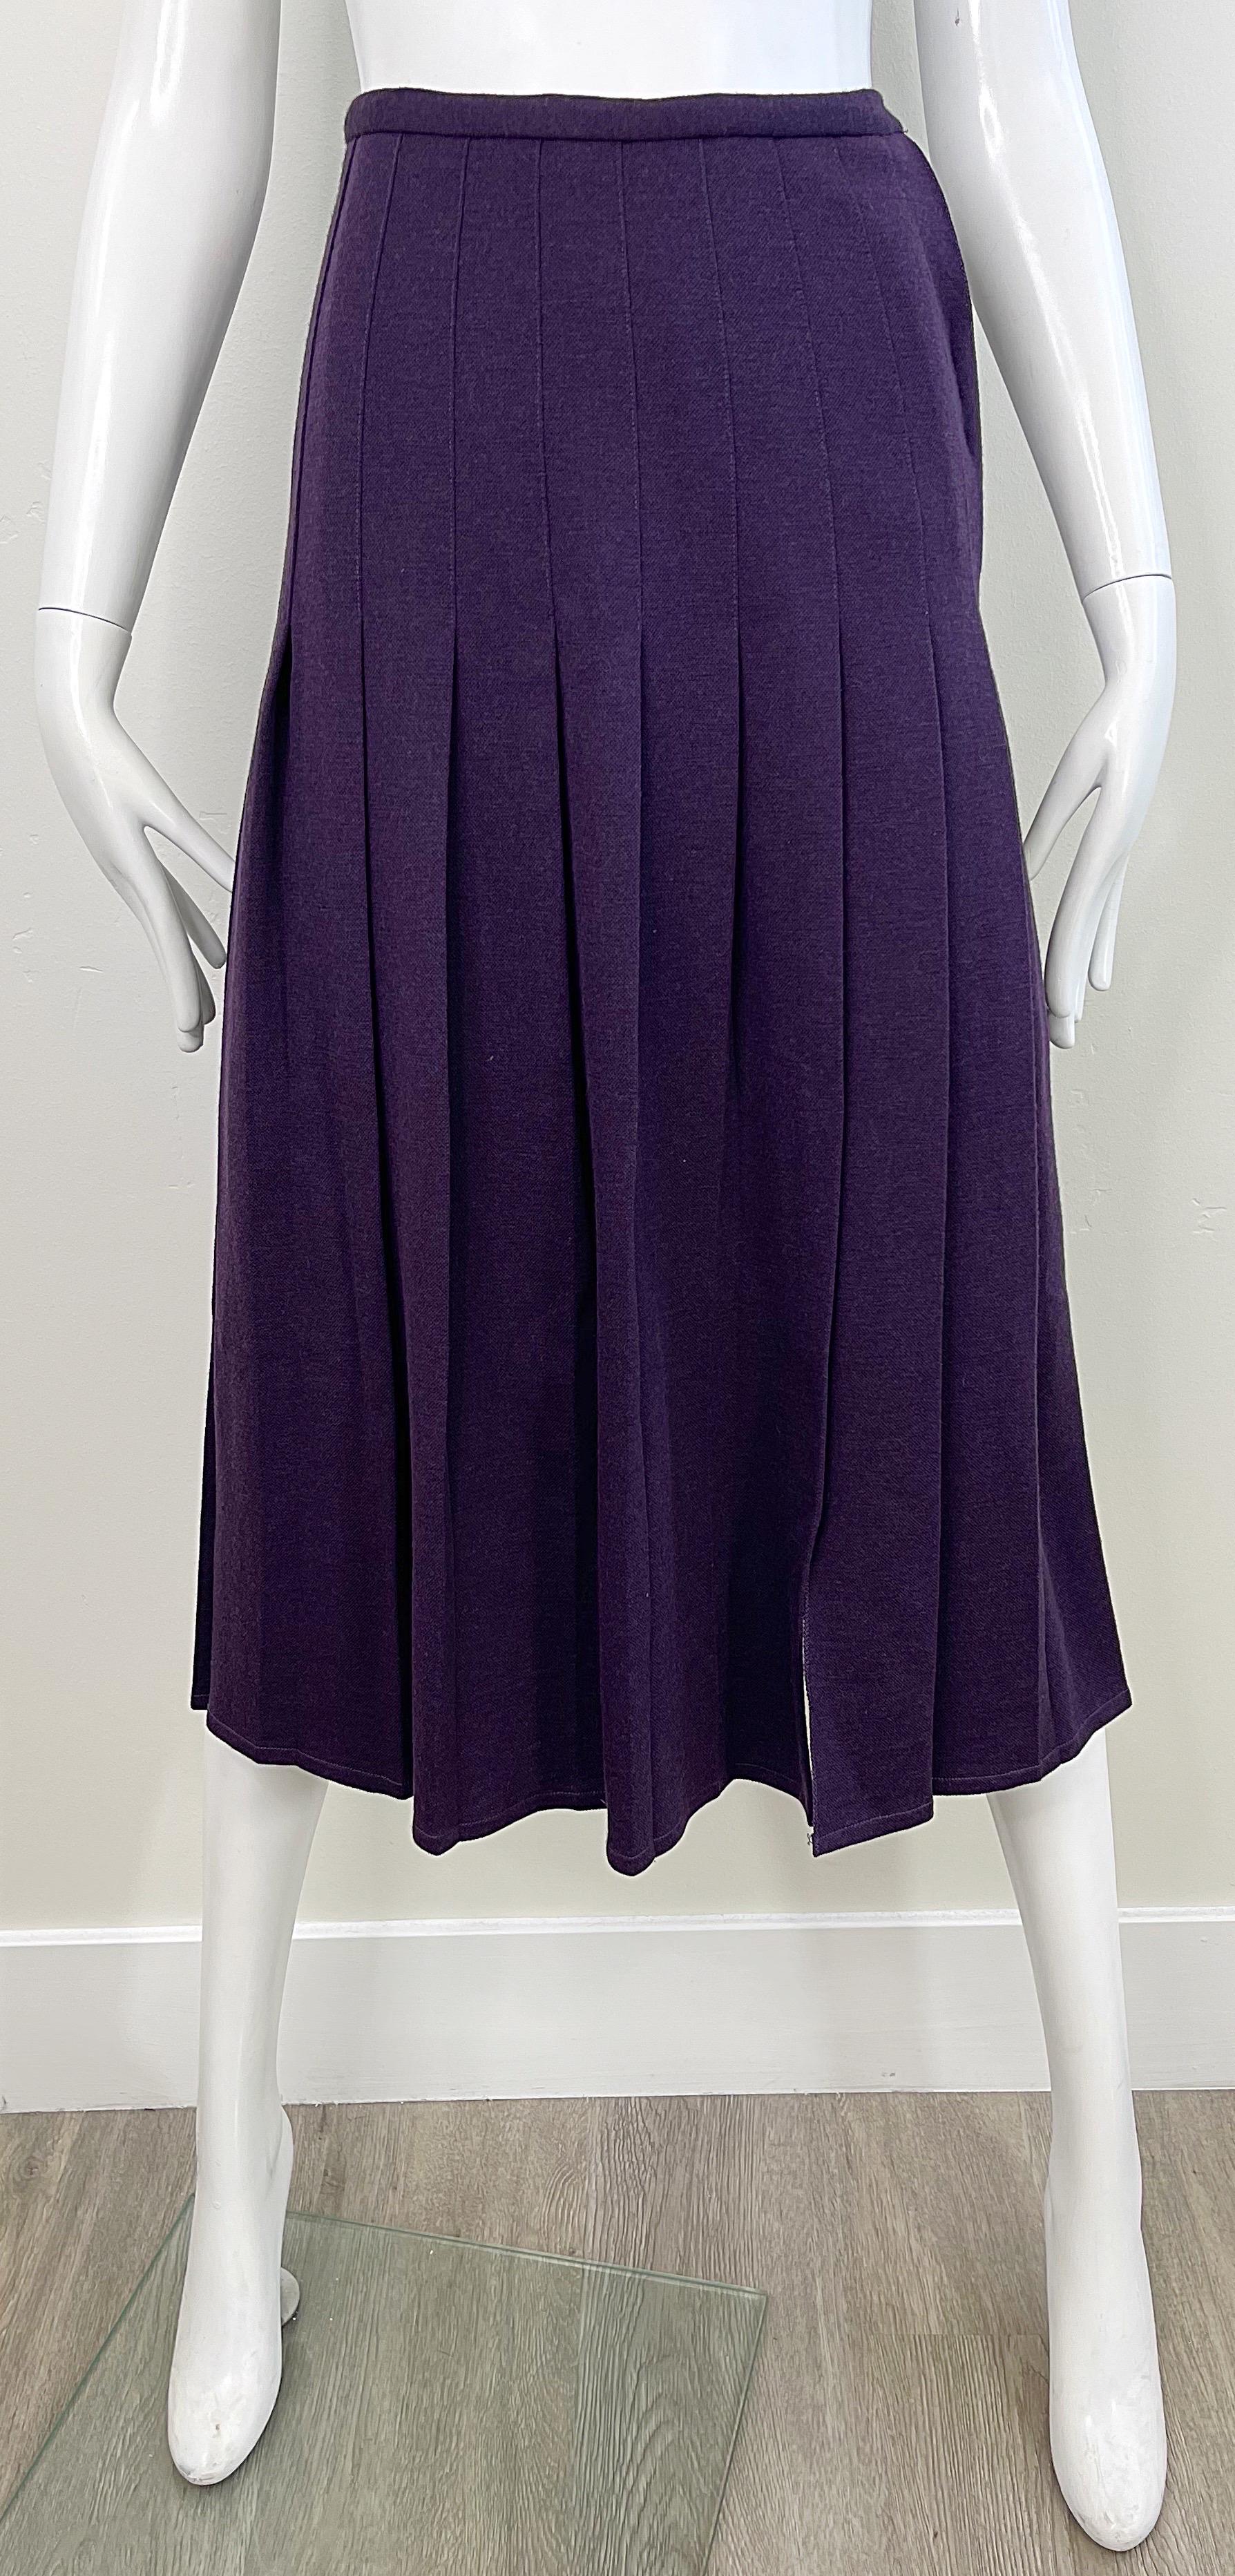 Chic jupe midi en laine SONIA RYKIEL fin des années 70, violet foncé / aubergine, à taille haute ! Fermeture à glissière cachée sur le côté avec fermeture à bouton / crochet et œillet. Peut facilement être habillé ou non. Associez-la à une blouse,